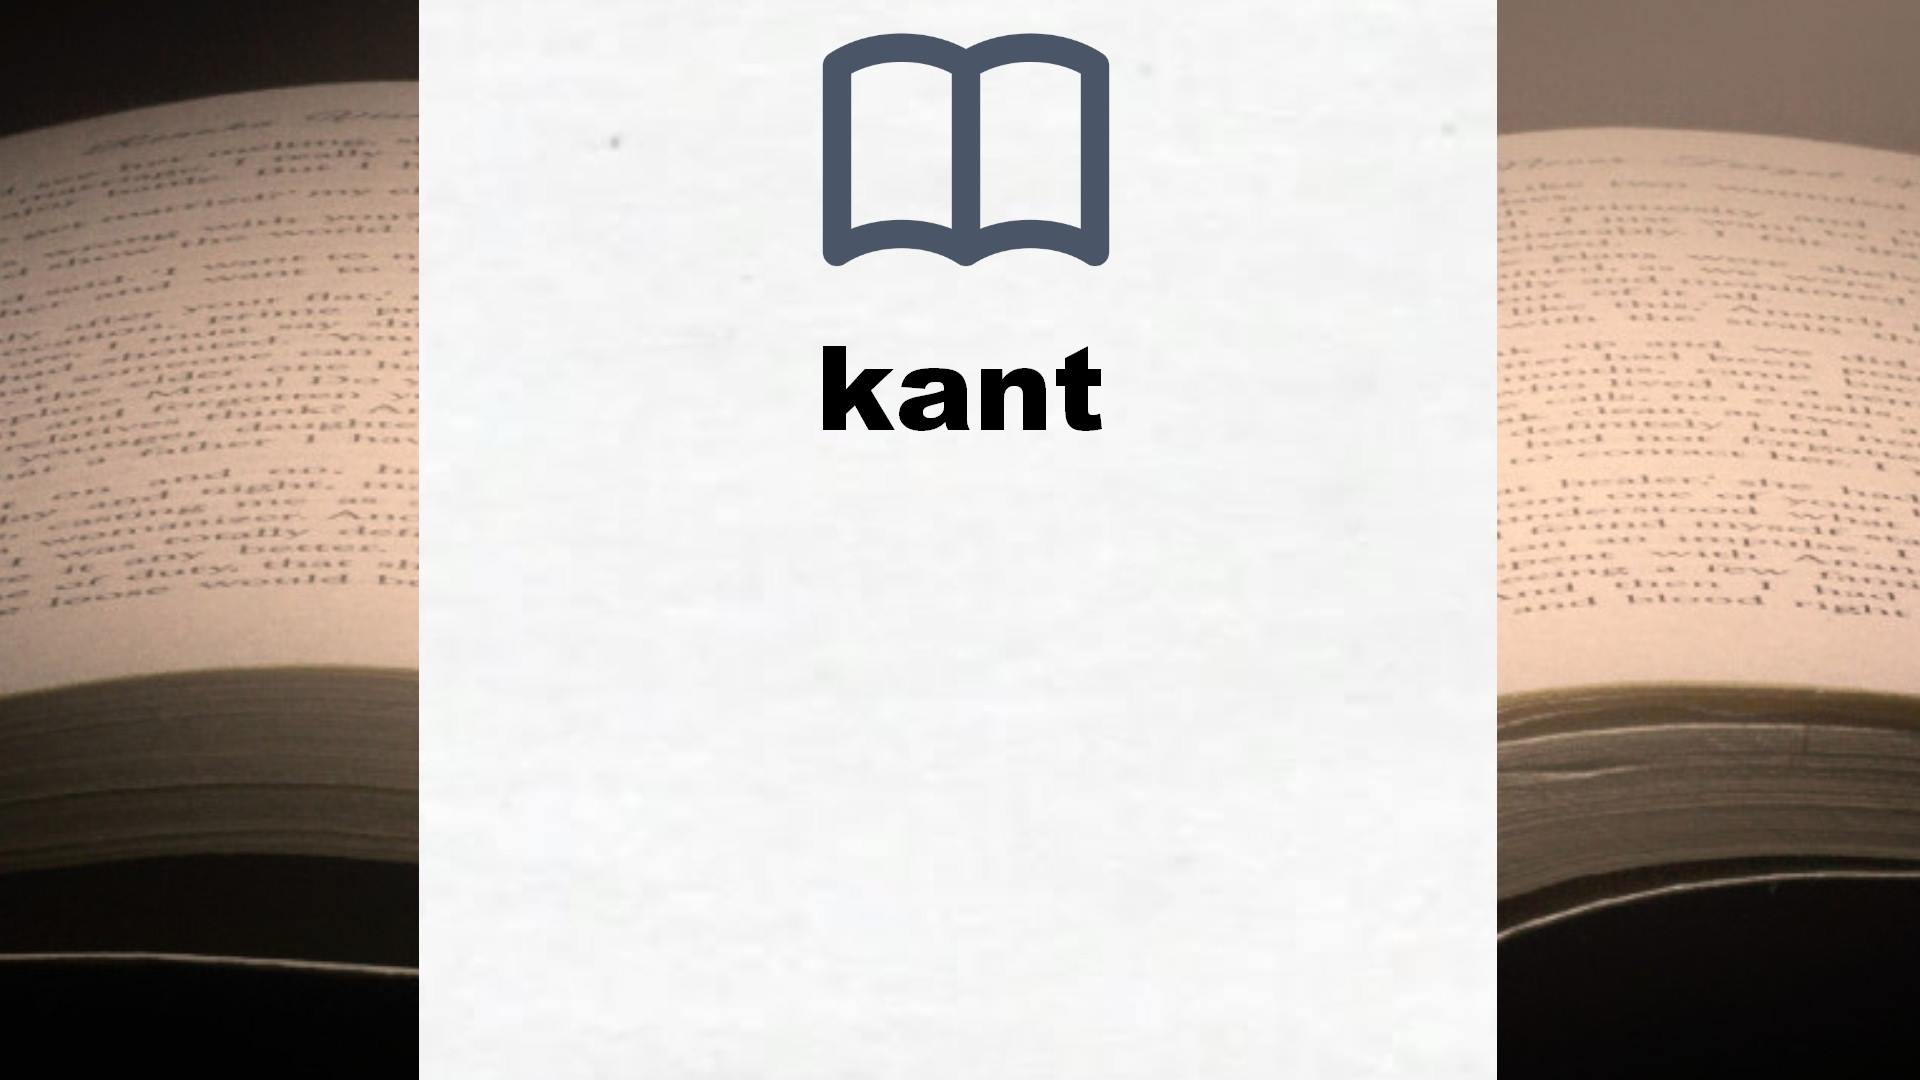 Libros sobre kant